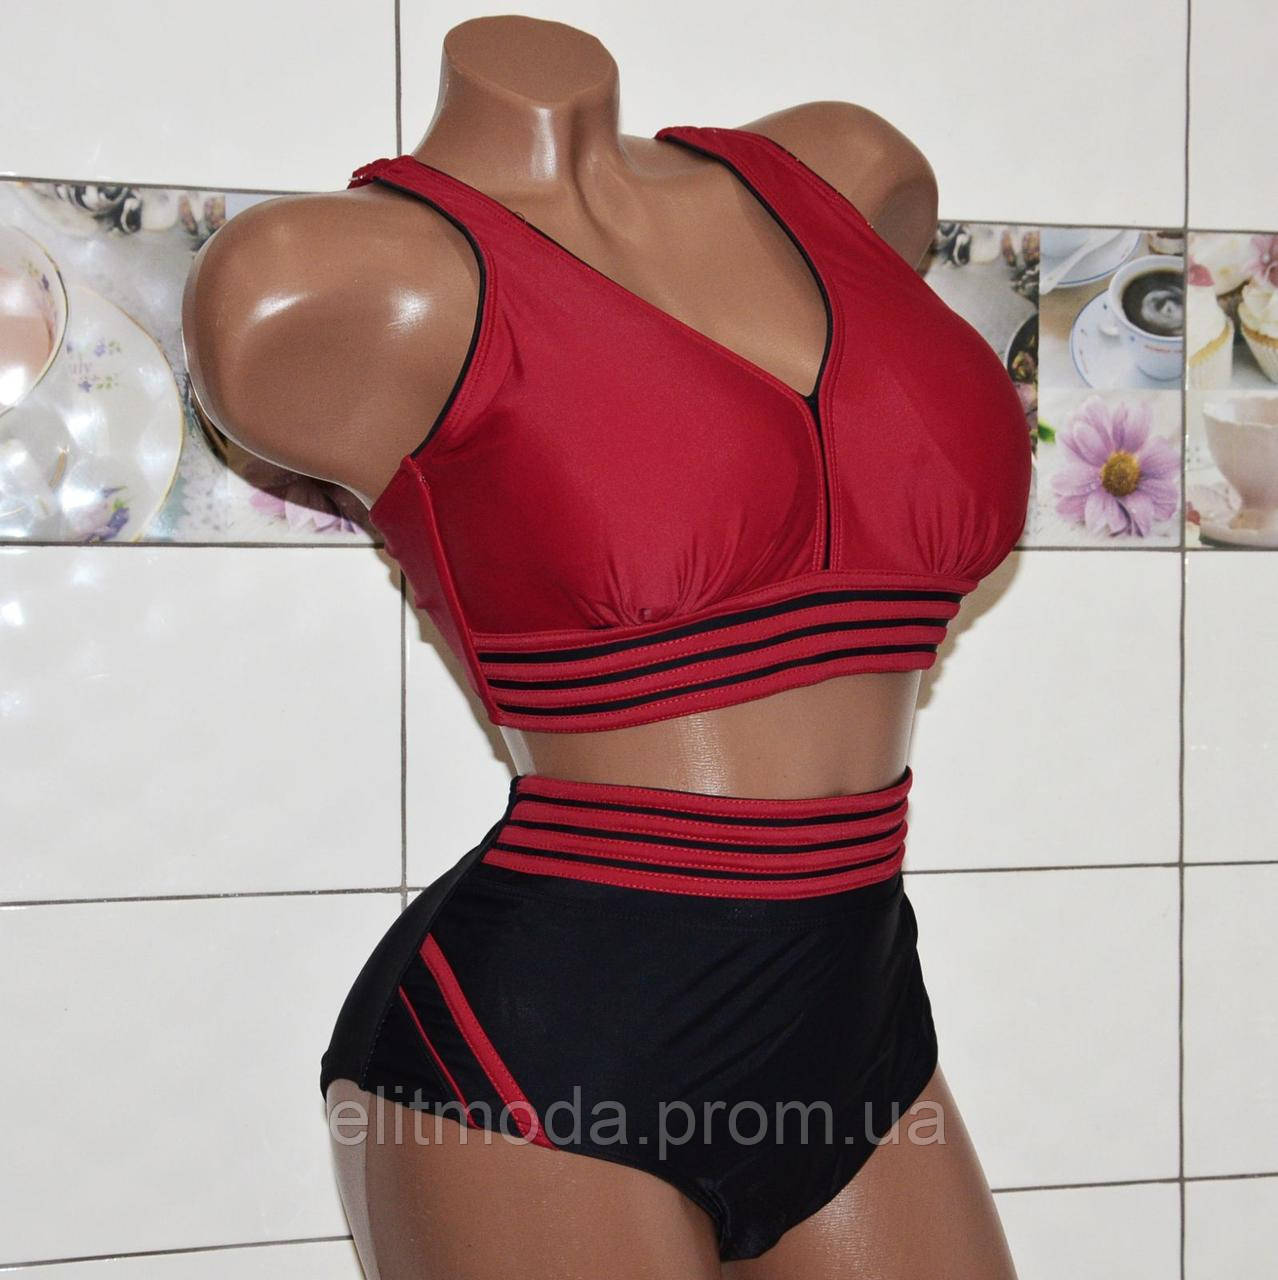 Розмір 66. Спортивний купальник для жінок на великі груди, чорно-червоний із м'якою чашкою.